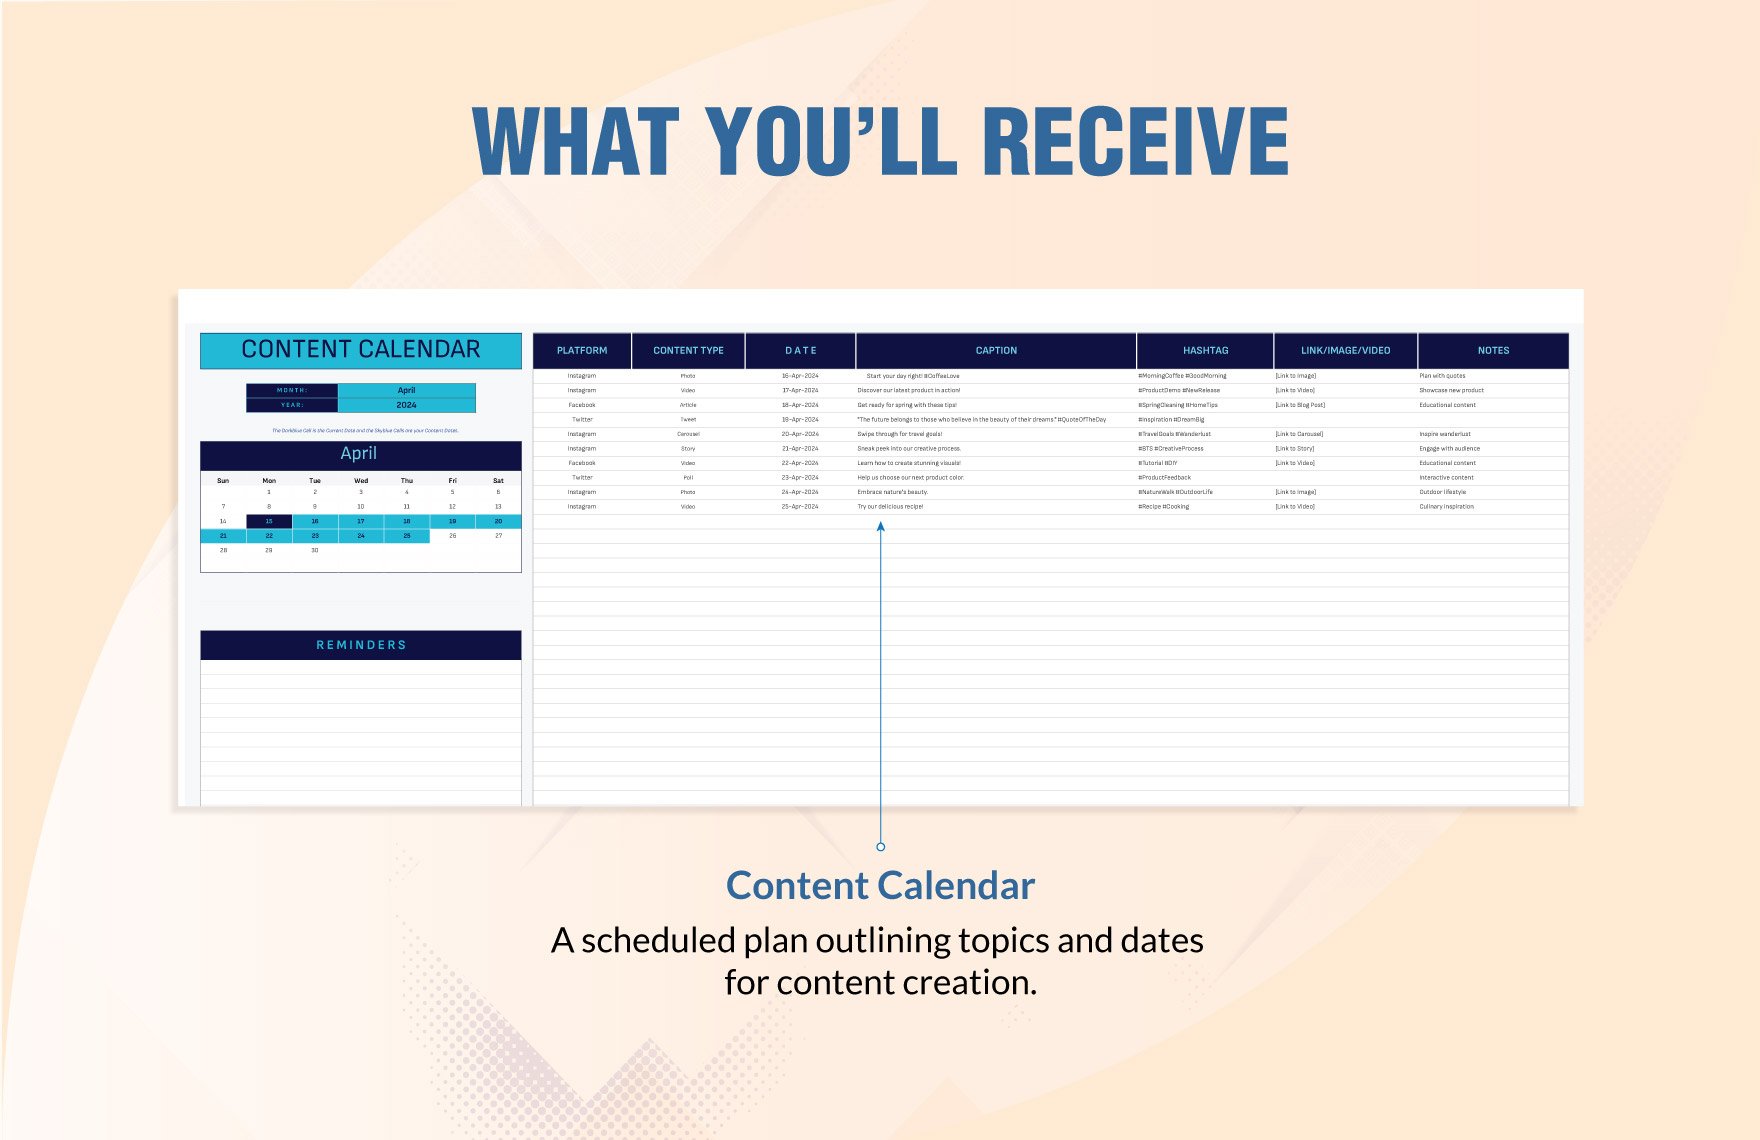 Simple Content Calendar Template